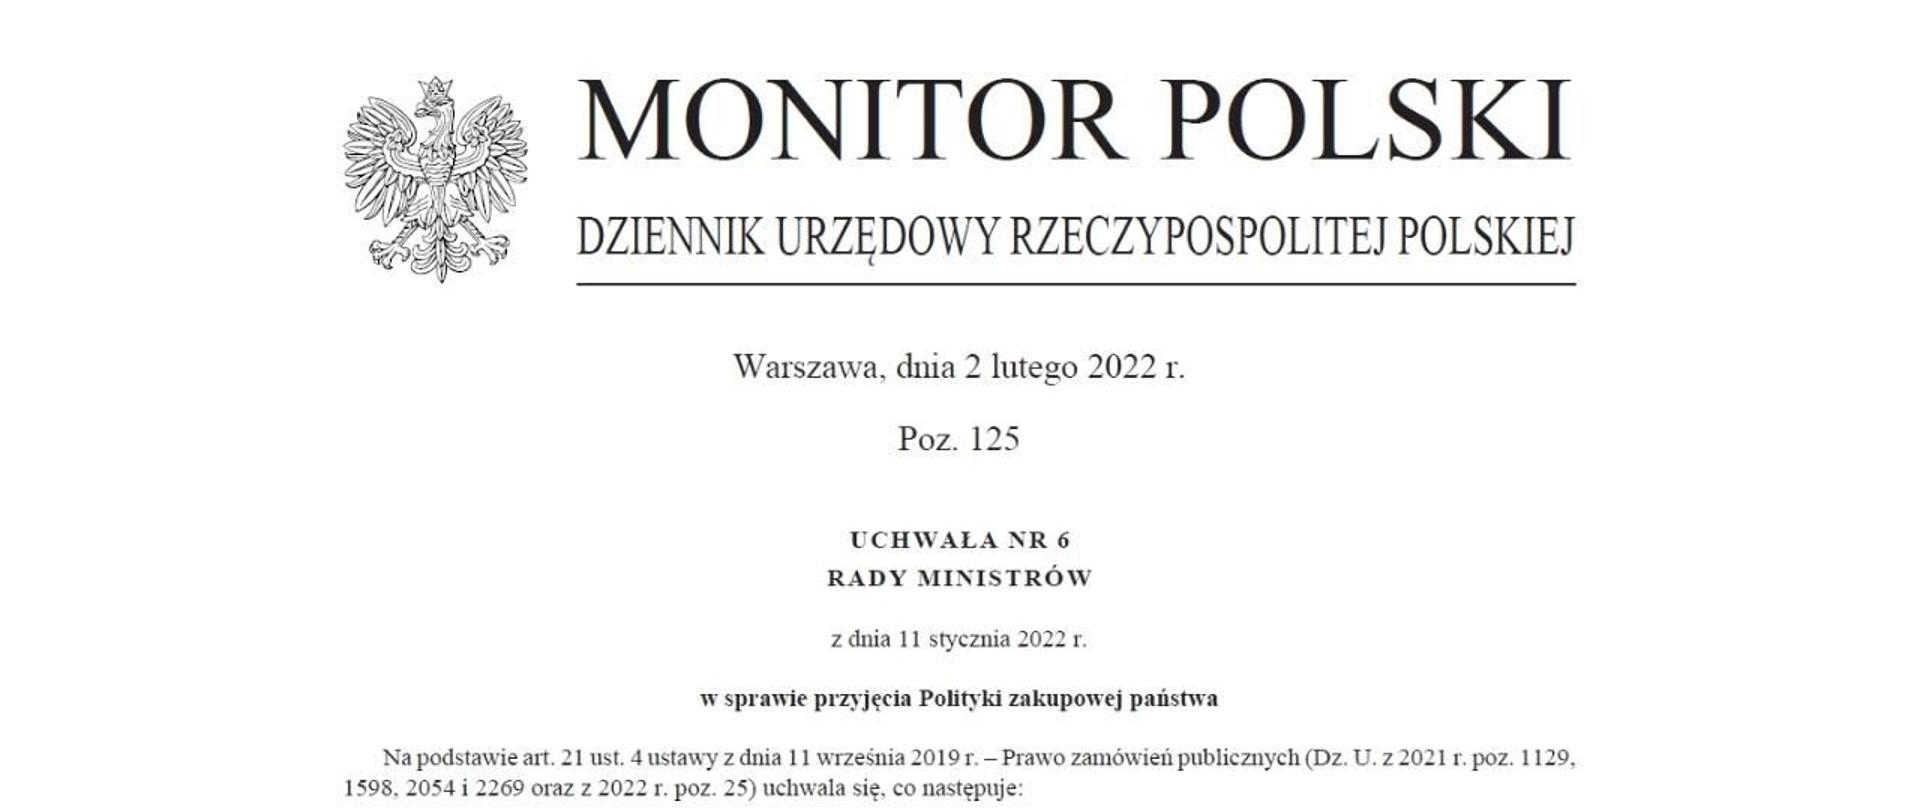 Zdjęcie pierwszej strony Monitora Polskiego z uchwałą Rady Ministrów w sprawie przyjęcia Polityki zakupowej państwa